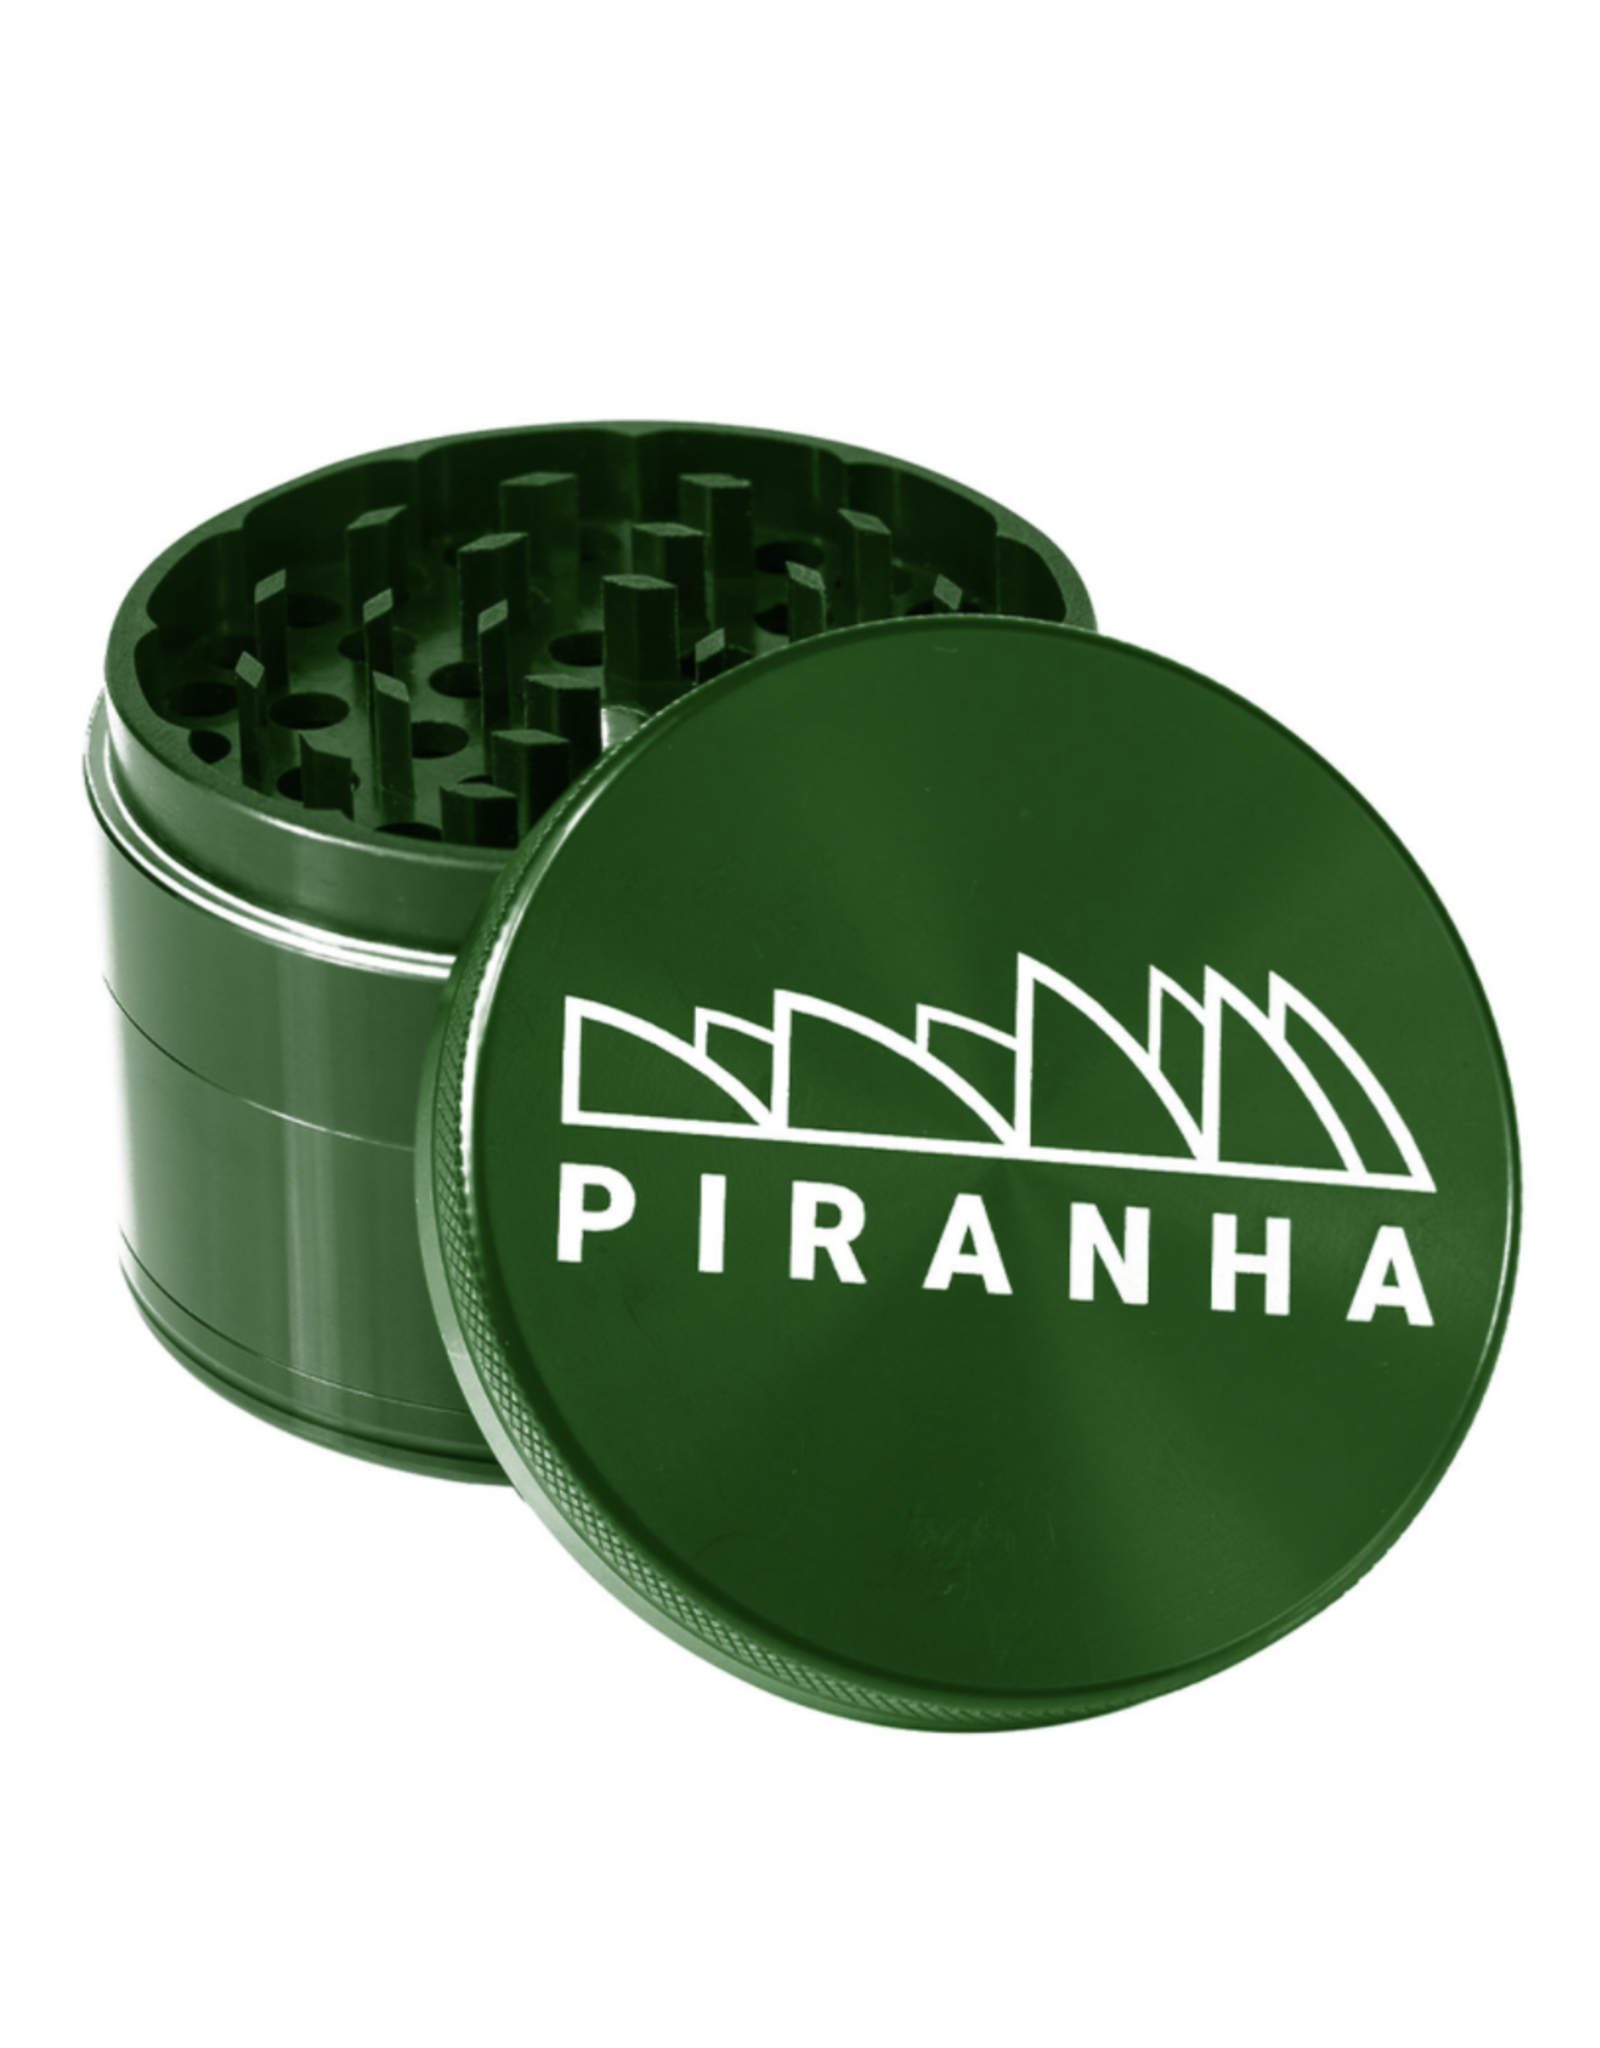 Piranha 2.5" 4 Piece Grinder